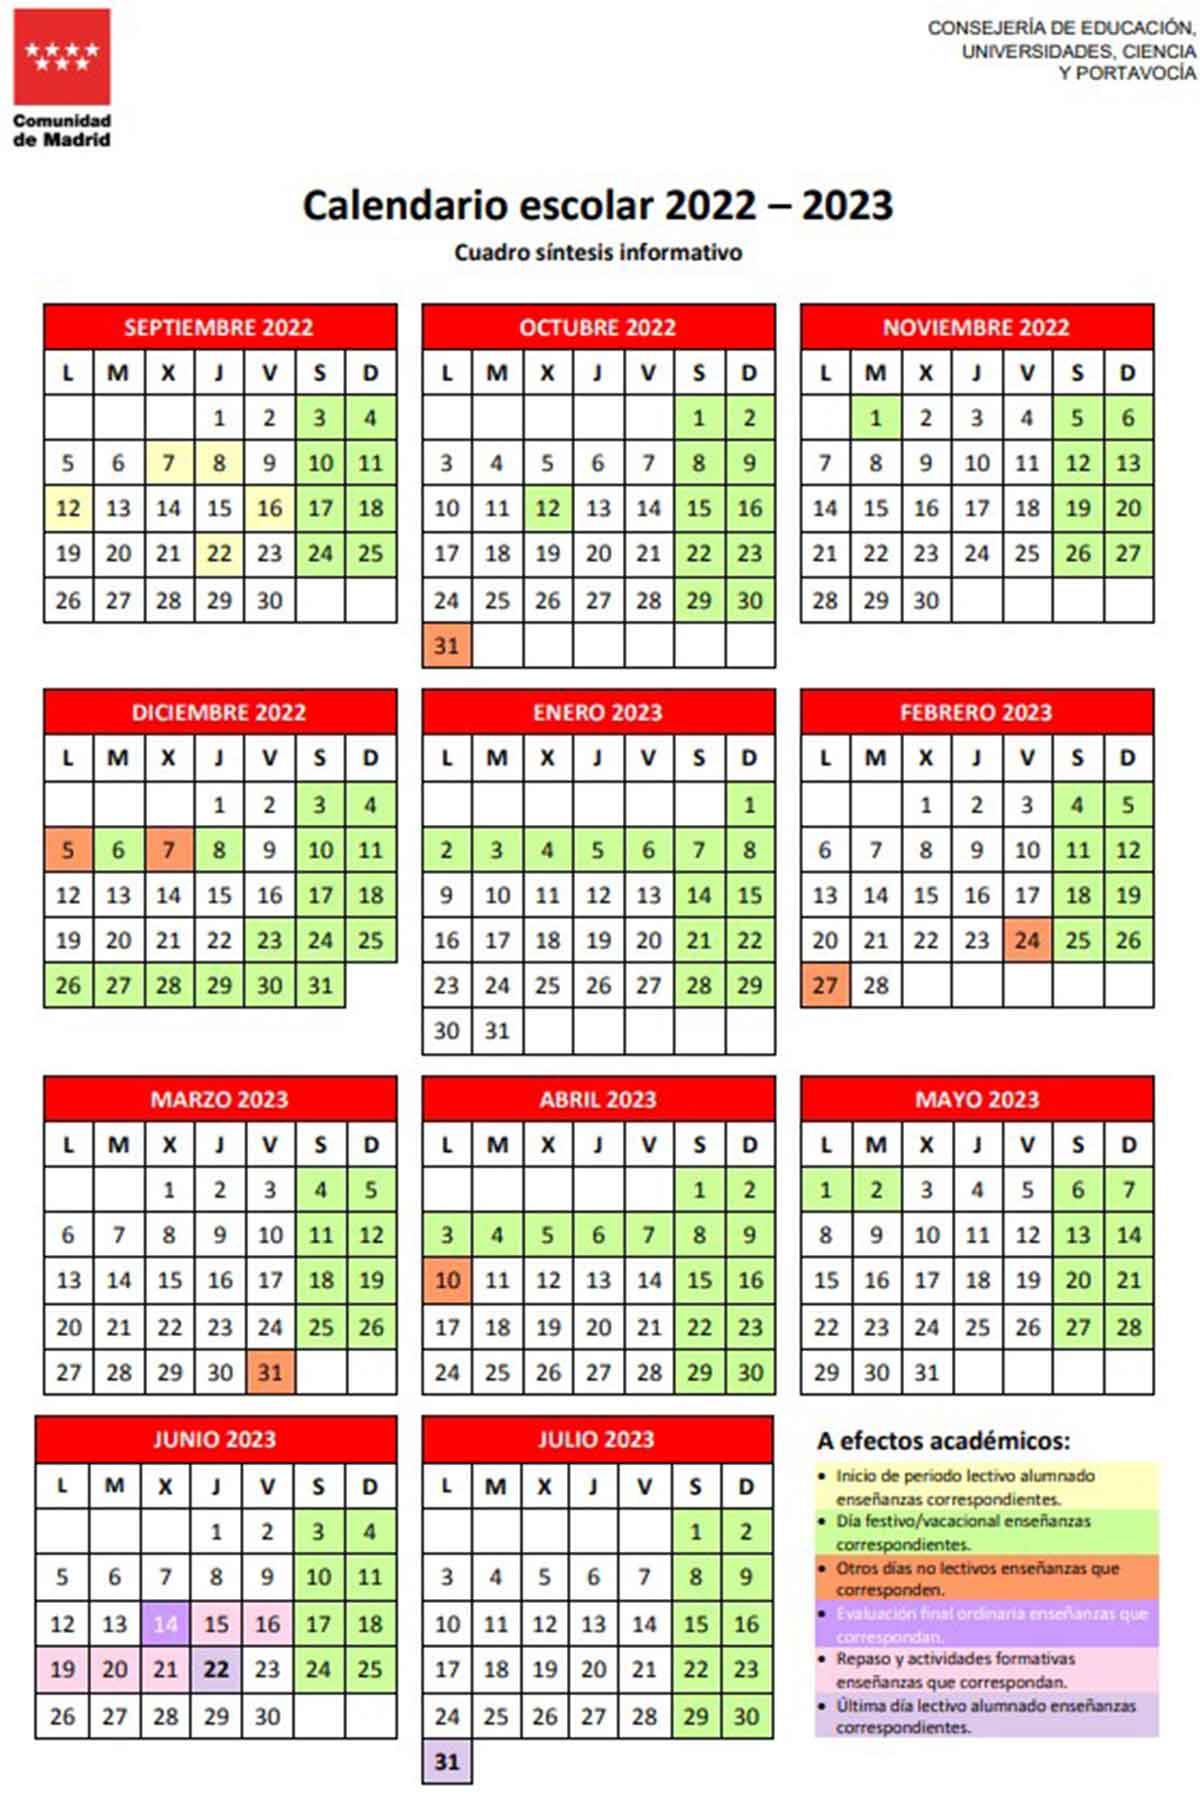 Calendario escolar de Madrid para el curso 2022 / 2023.